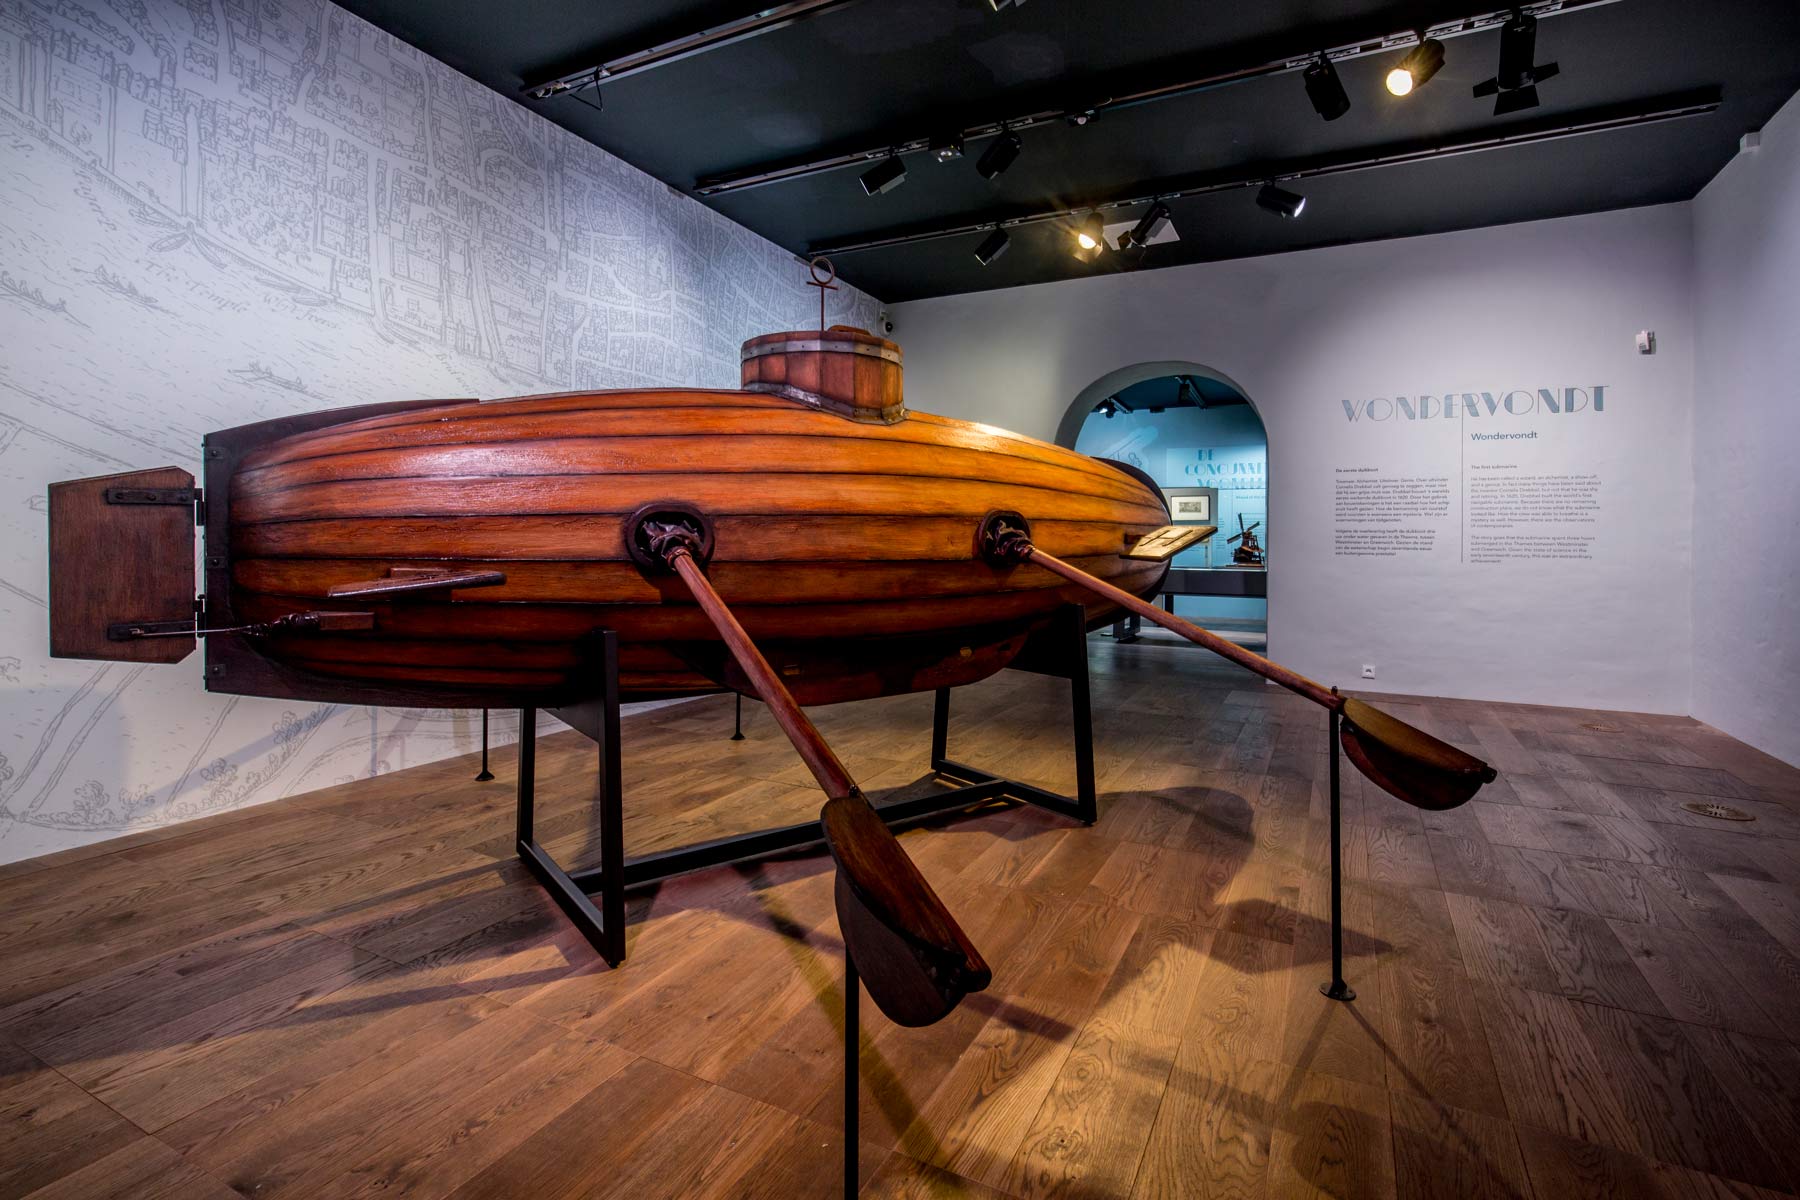 Het Scheepvaartmuseum Amsterdam - Gamechangers | maritieme innovaties